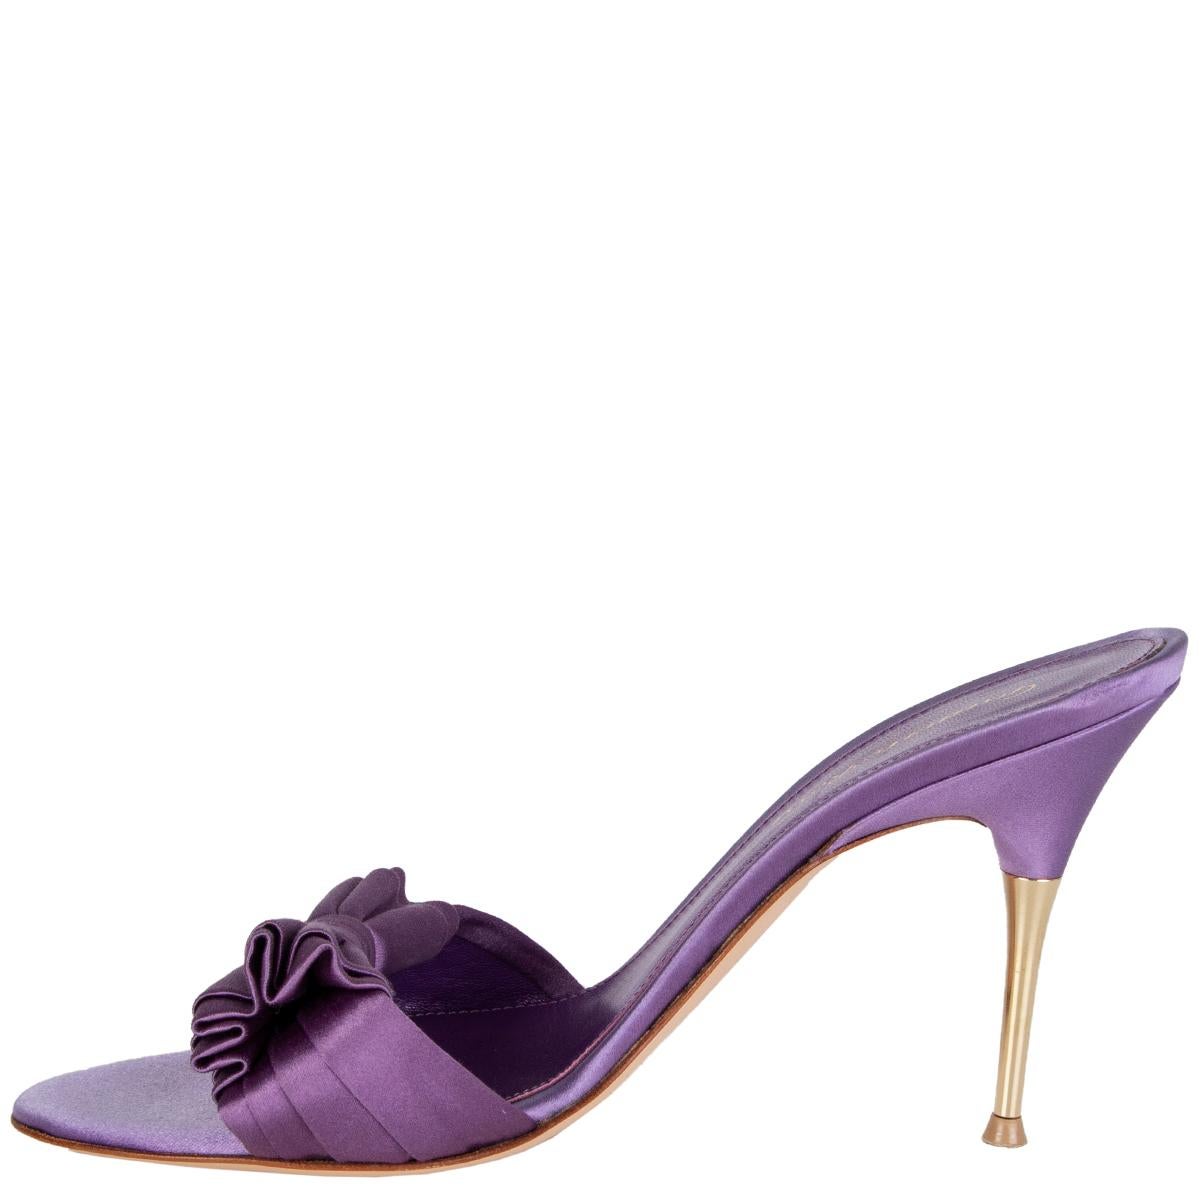 gianvito rossi purple sandals